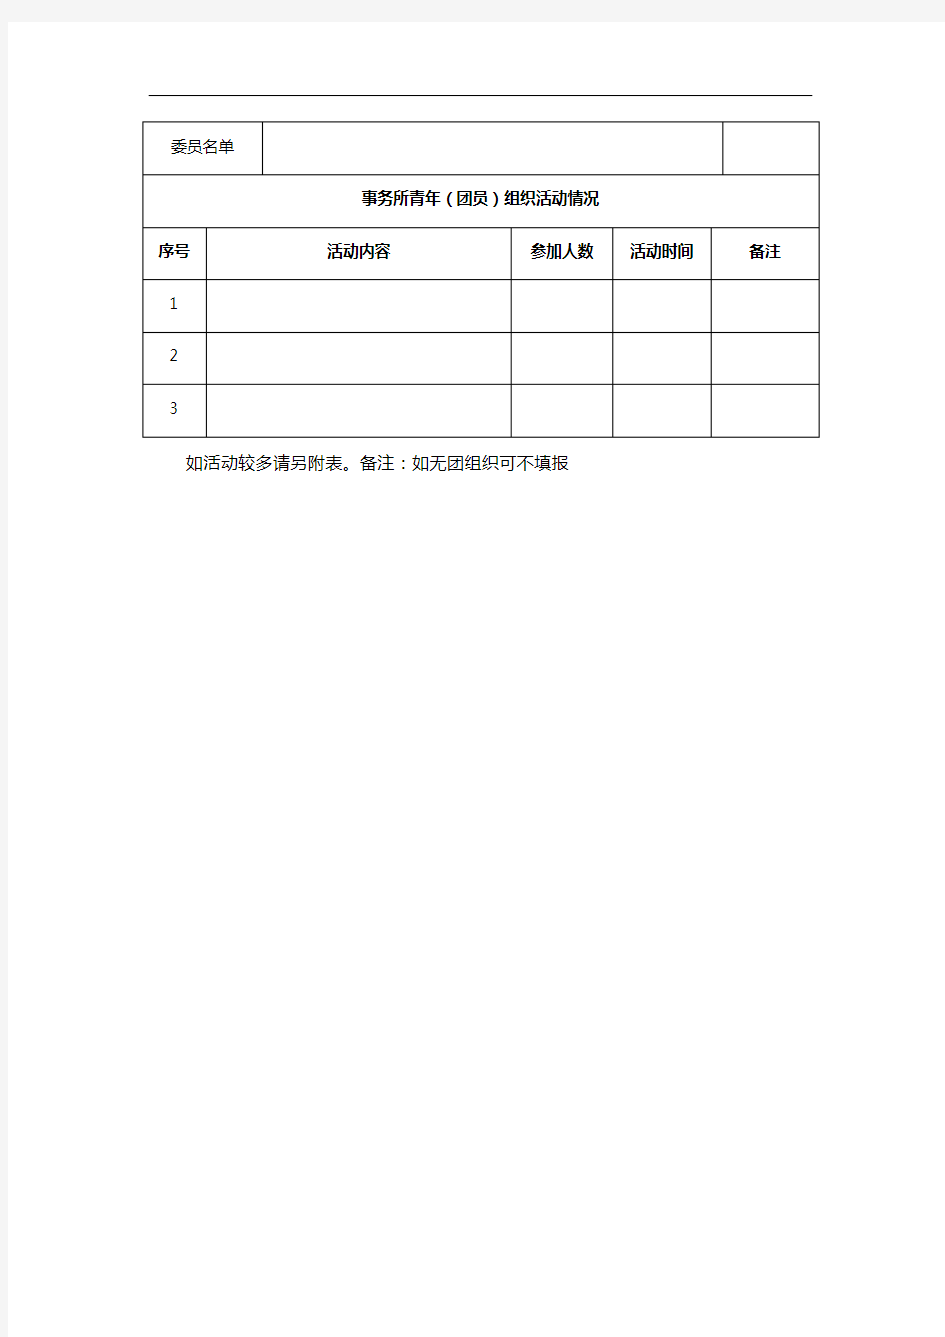 2019年注册会计师年检审核表(团建部分)